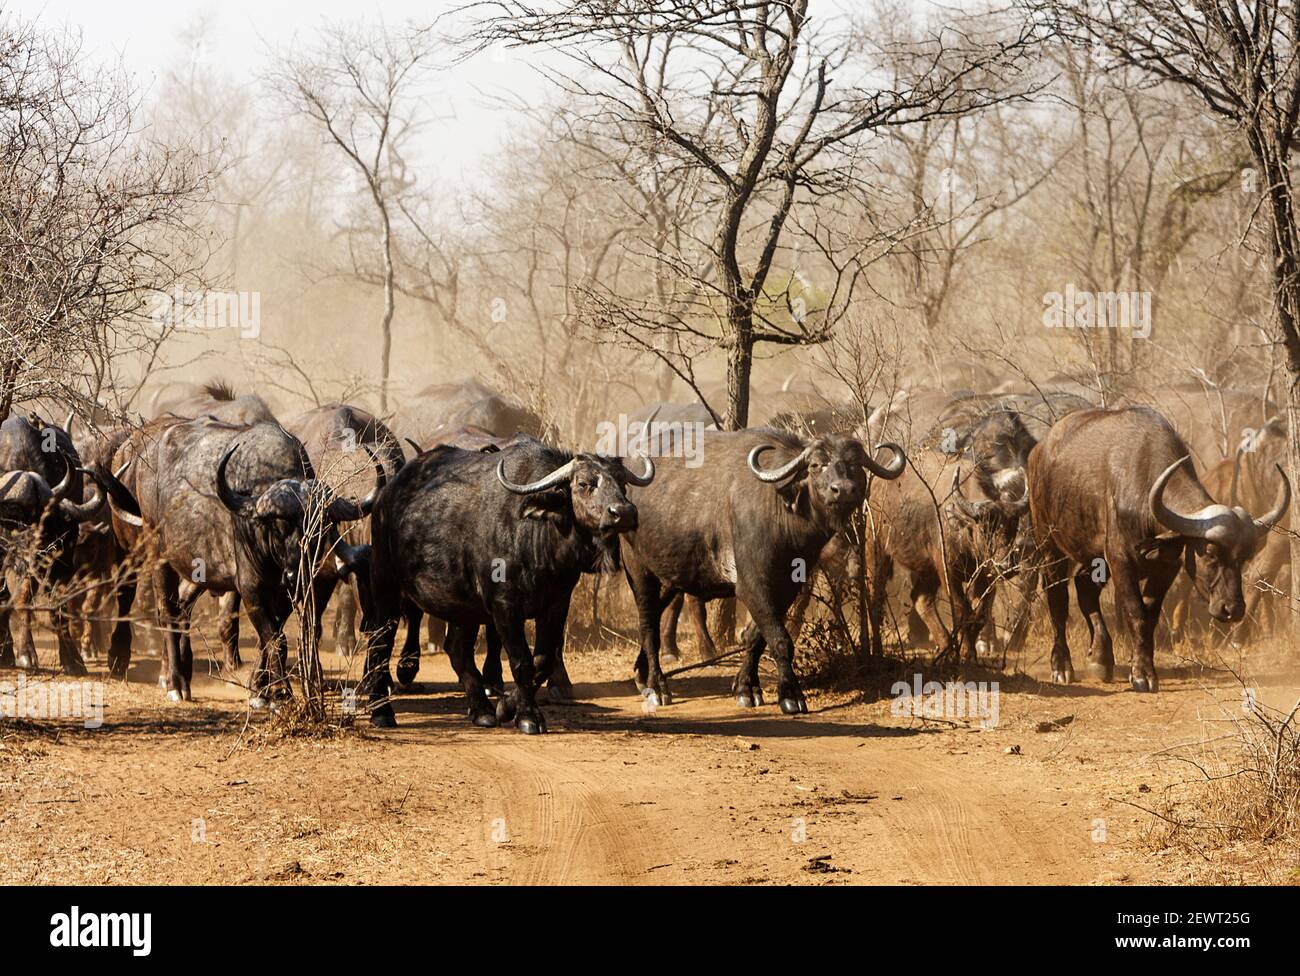 Il bufalo africano o bufalo di Capo, è un grande bovino africano. Entrambi i sessi hanno corna, quelli dei tori sono caratterizzati da un boss pesante Foto Stock